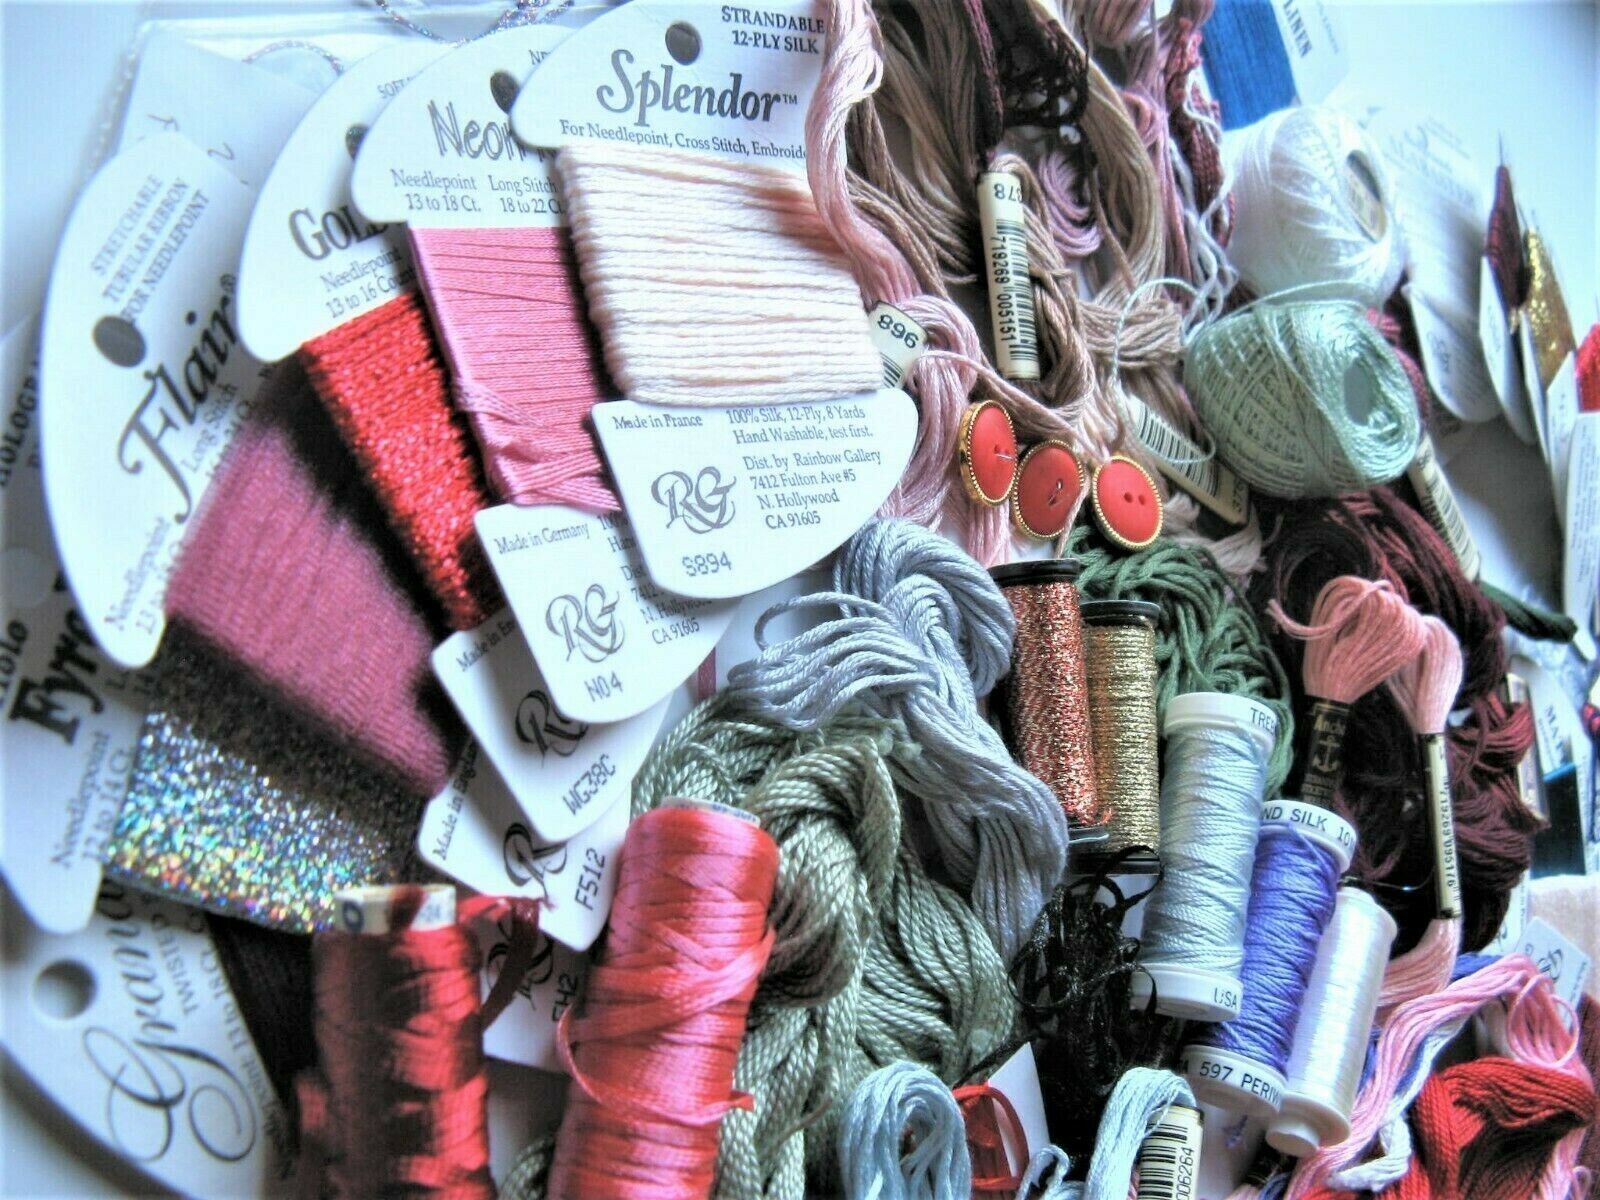 Lot 14 Oz Vintage Designer Needlepoint Embroidery Floss Thread Kreinik MEZ DMC